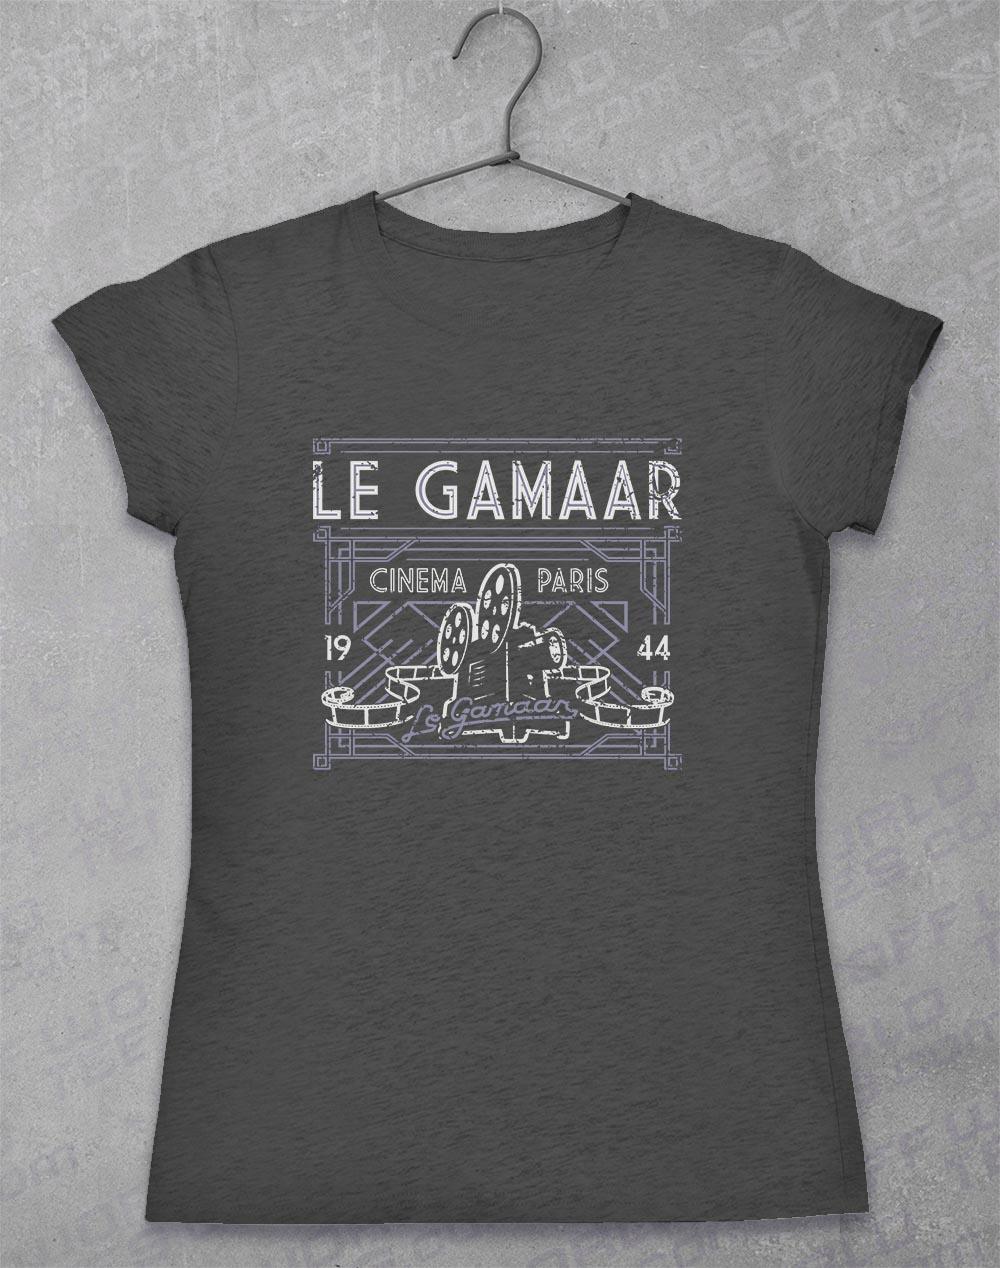 Le Gamaar - Women's T-Shirt 8-10 / Dark Heather  - Off World Tees